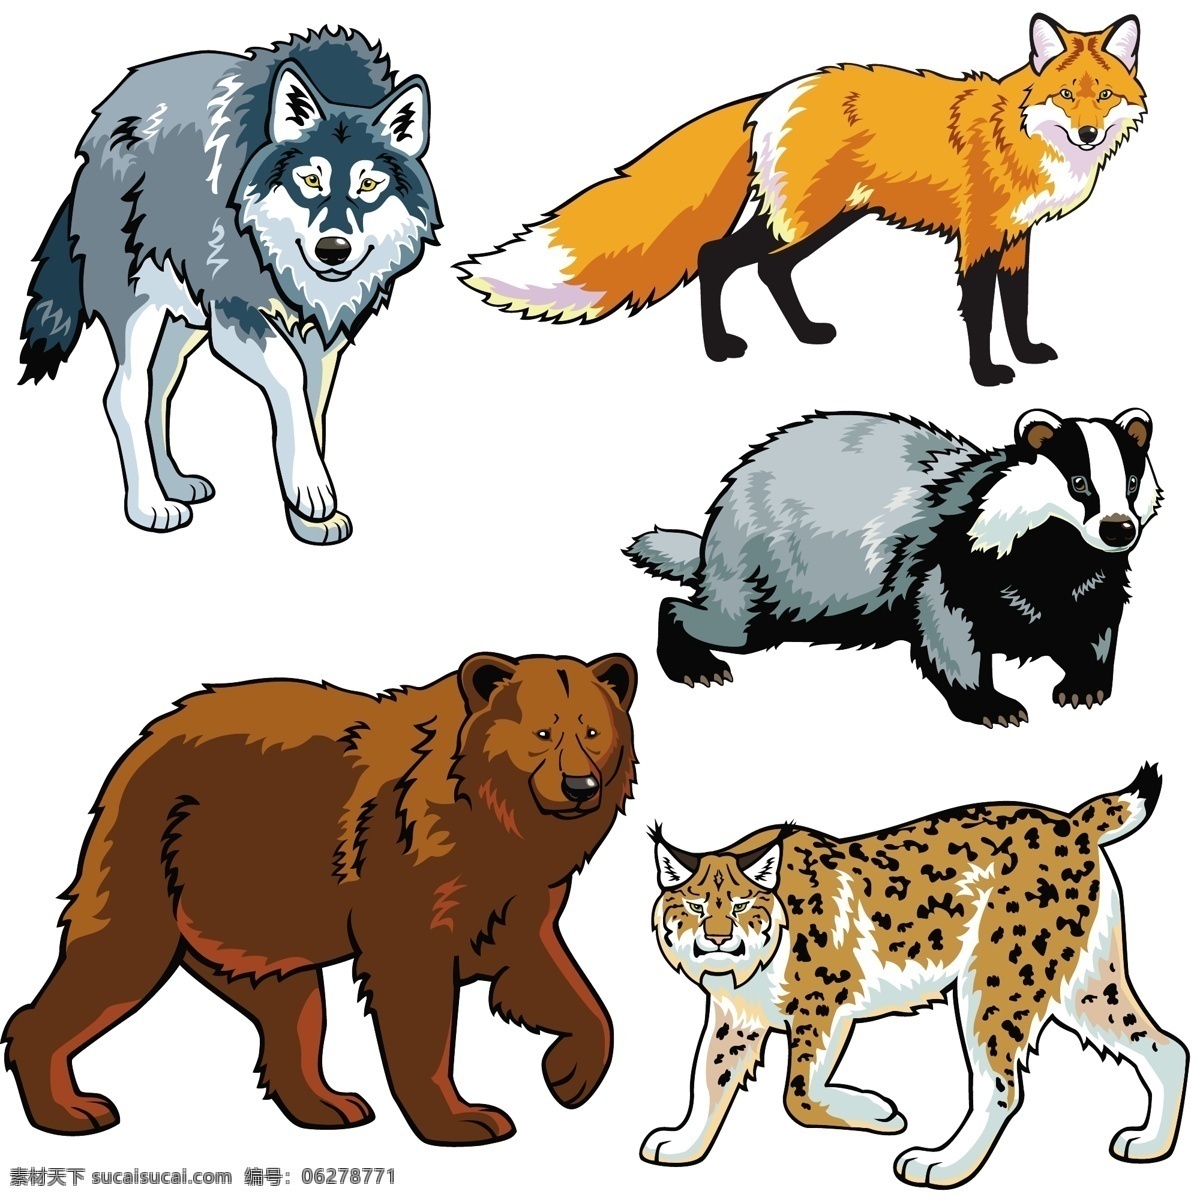 凶猛 动物 绘画 陆地动物 动物世界 卡通动物 漫画动物 狐狸 矢量 高清图片